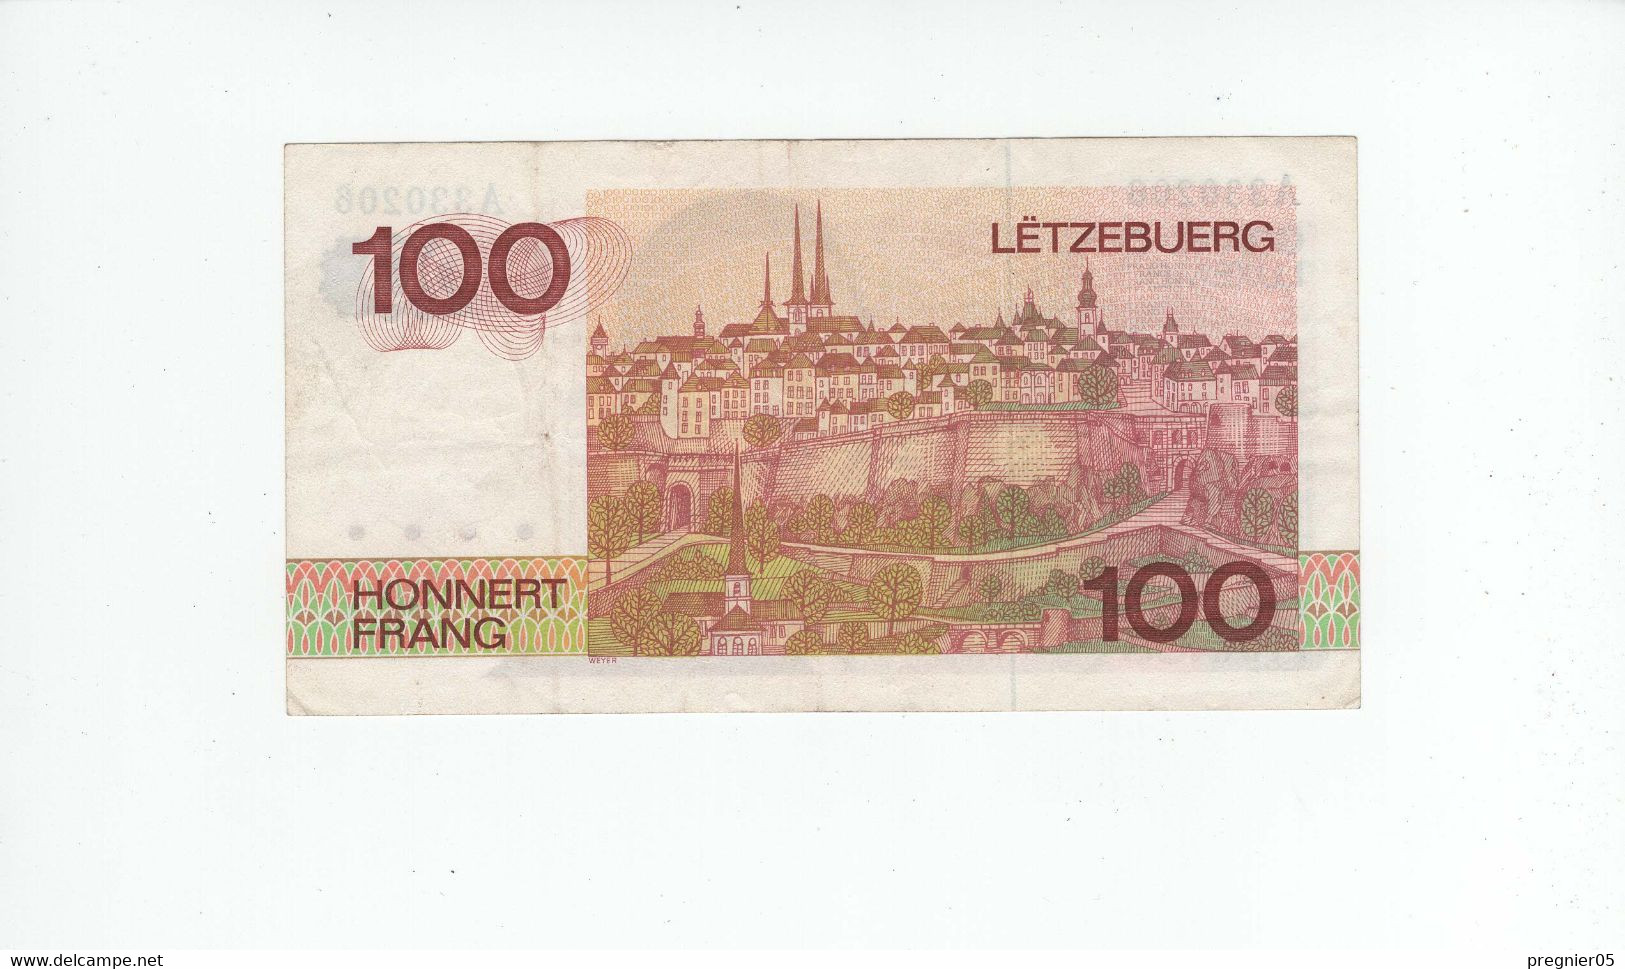 LUXEMBOURG " Baisse De Prix " Billet 100 Francs 1980 SUP P.57-A N° 330206 - Luxemburg